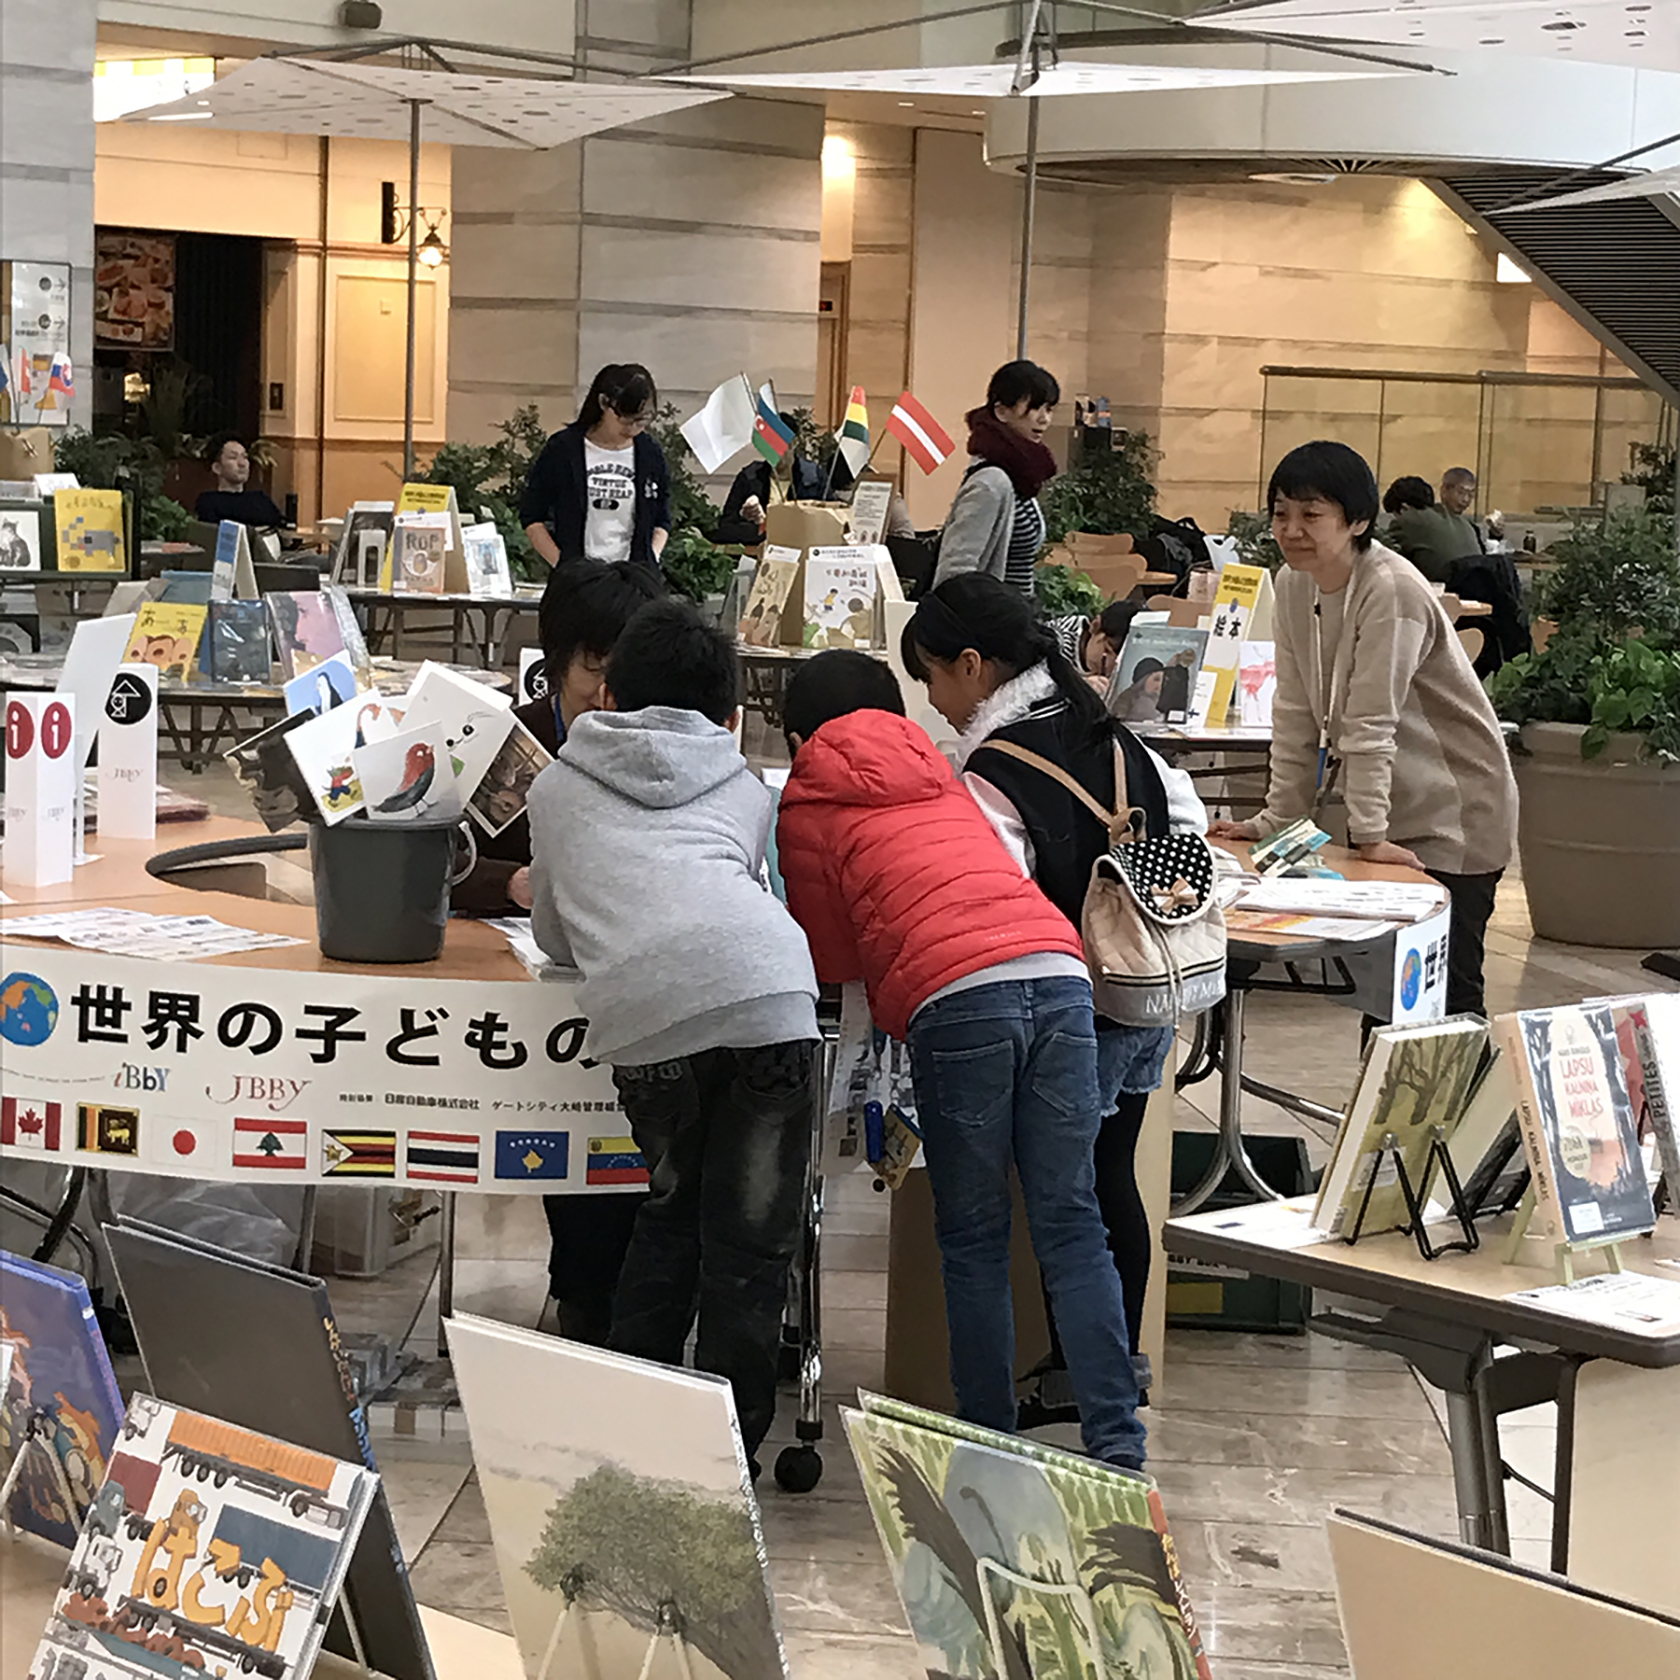 日本国際児童図書評議会（JBBY）